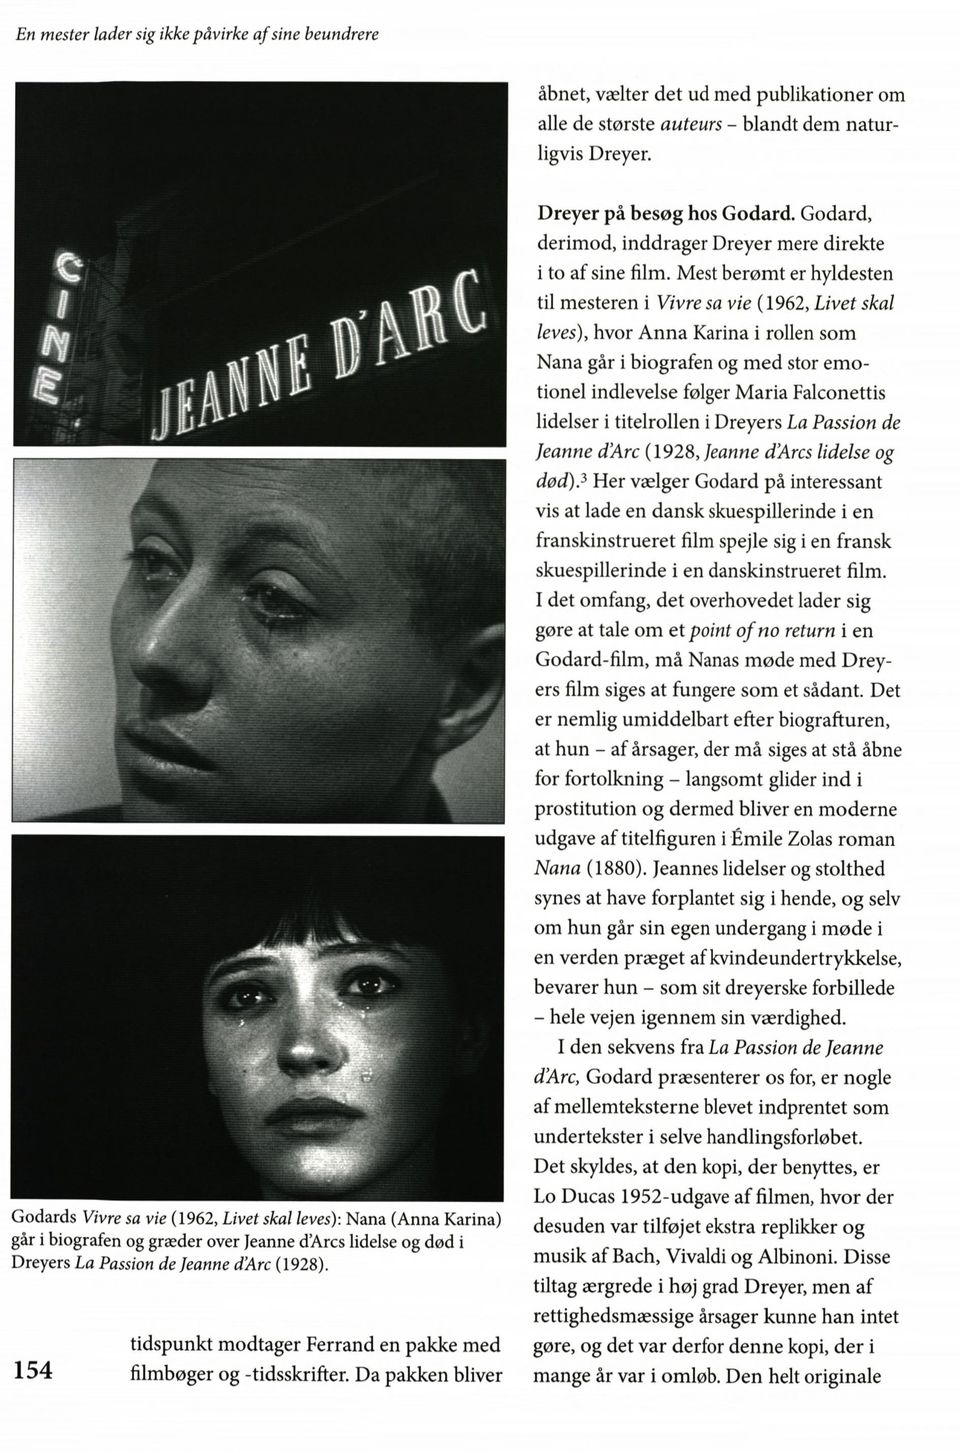 tidspunkt modtager Ferrand en pakke med 1 5 4 filmbøger og -tidsskrifter. Da pakken bliver Dreyer på besøg hos Godard. Godard, derimod, inddrager Dreyer mere direkte i to af sine film.